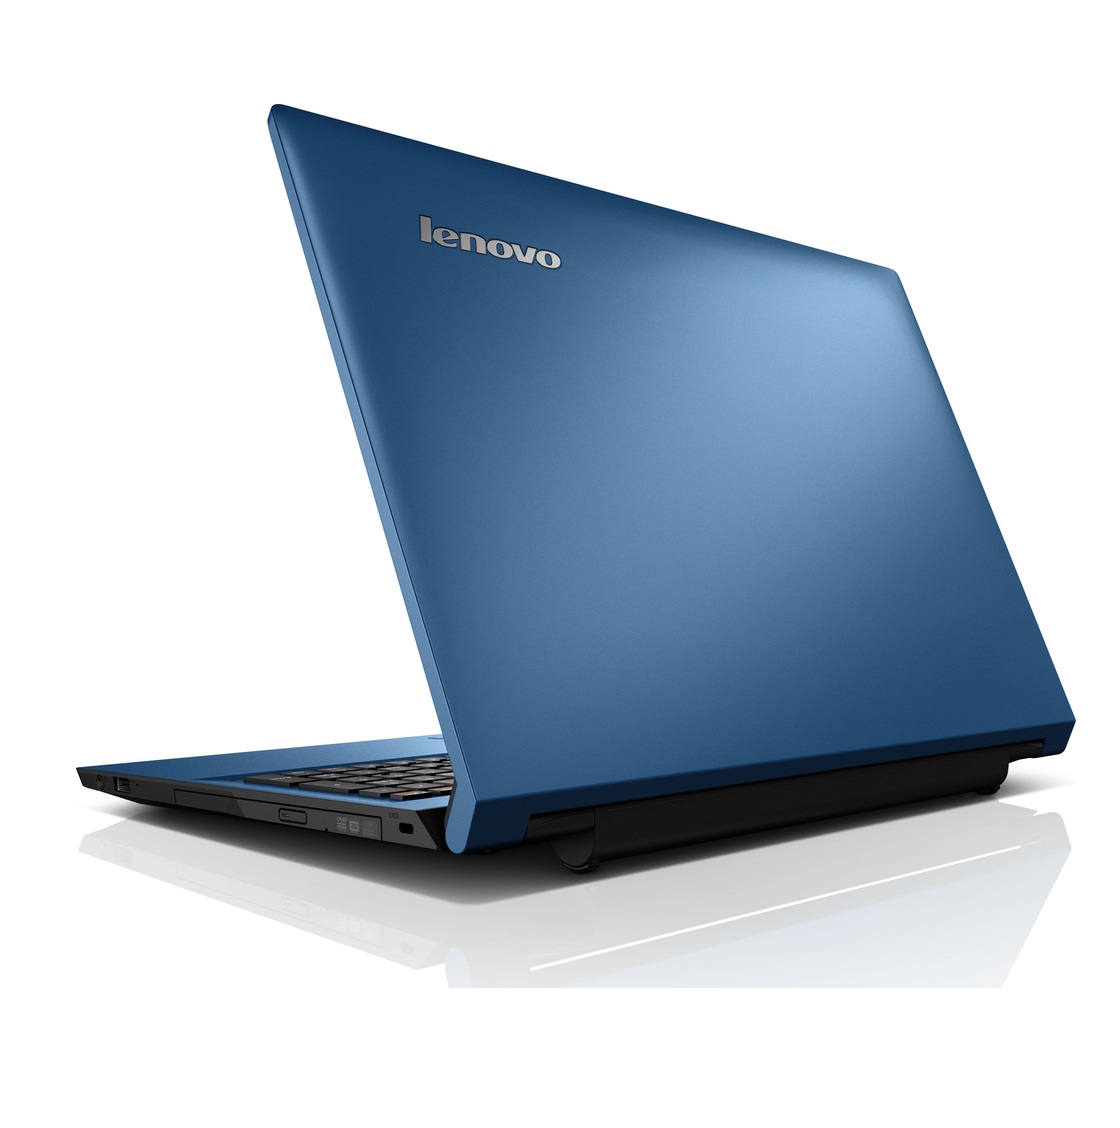 Máy tính xách tay Lenovo Ideapad 305 80NJ00HSVN (Blue)- Bảo hành vàng 1 năm quốc tế